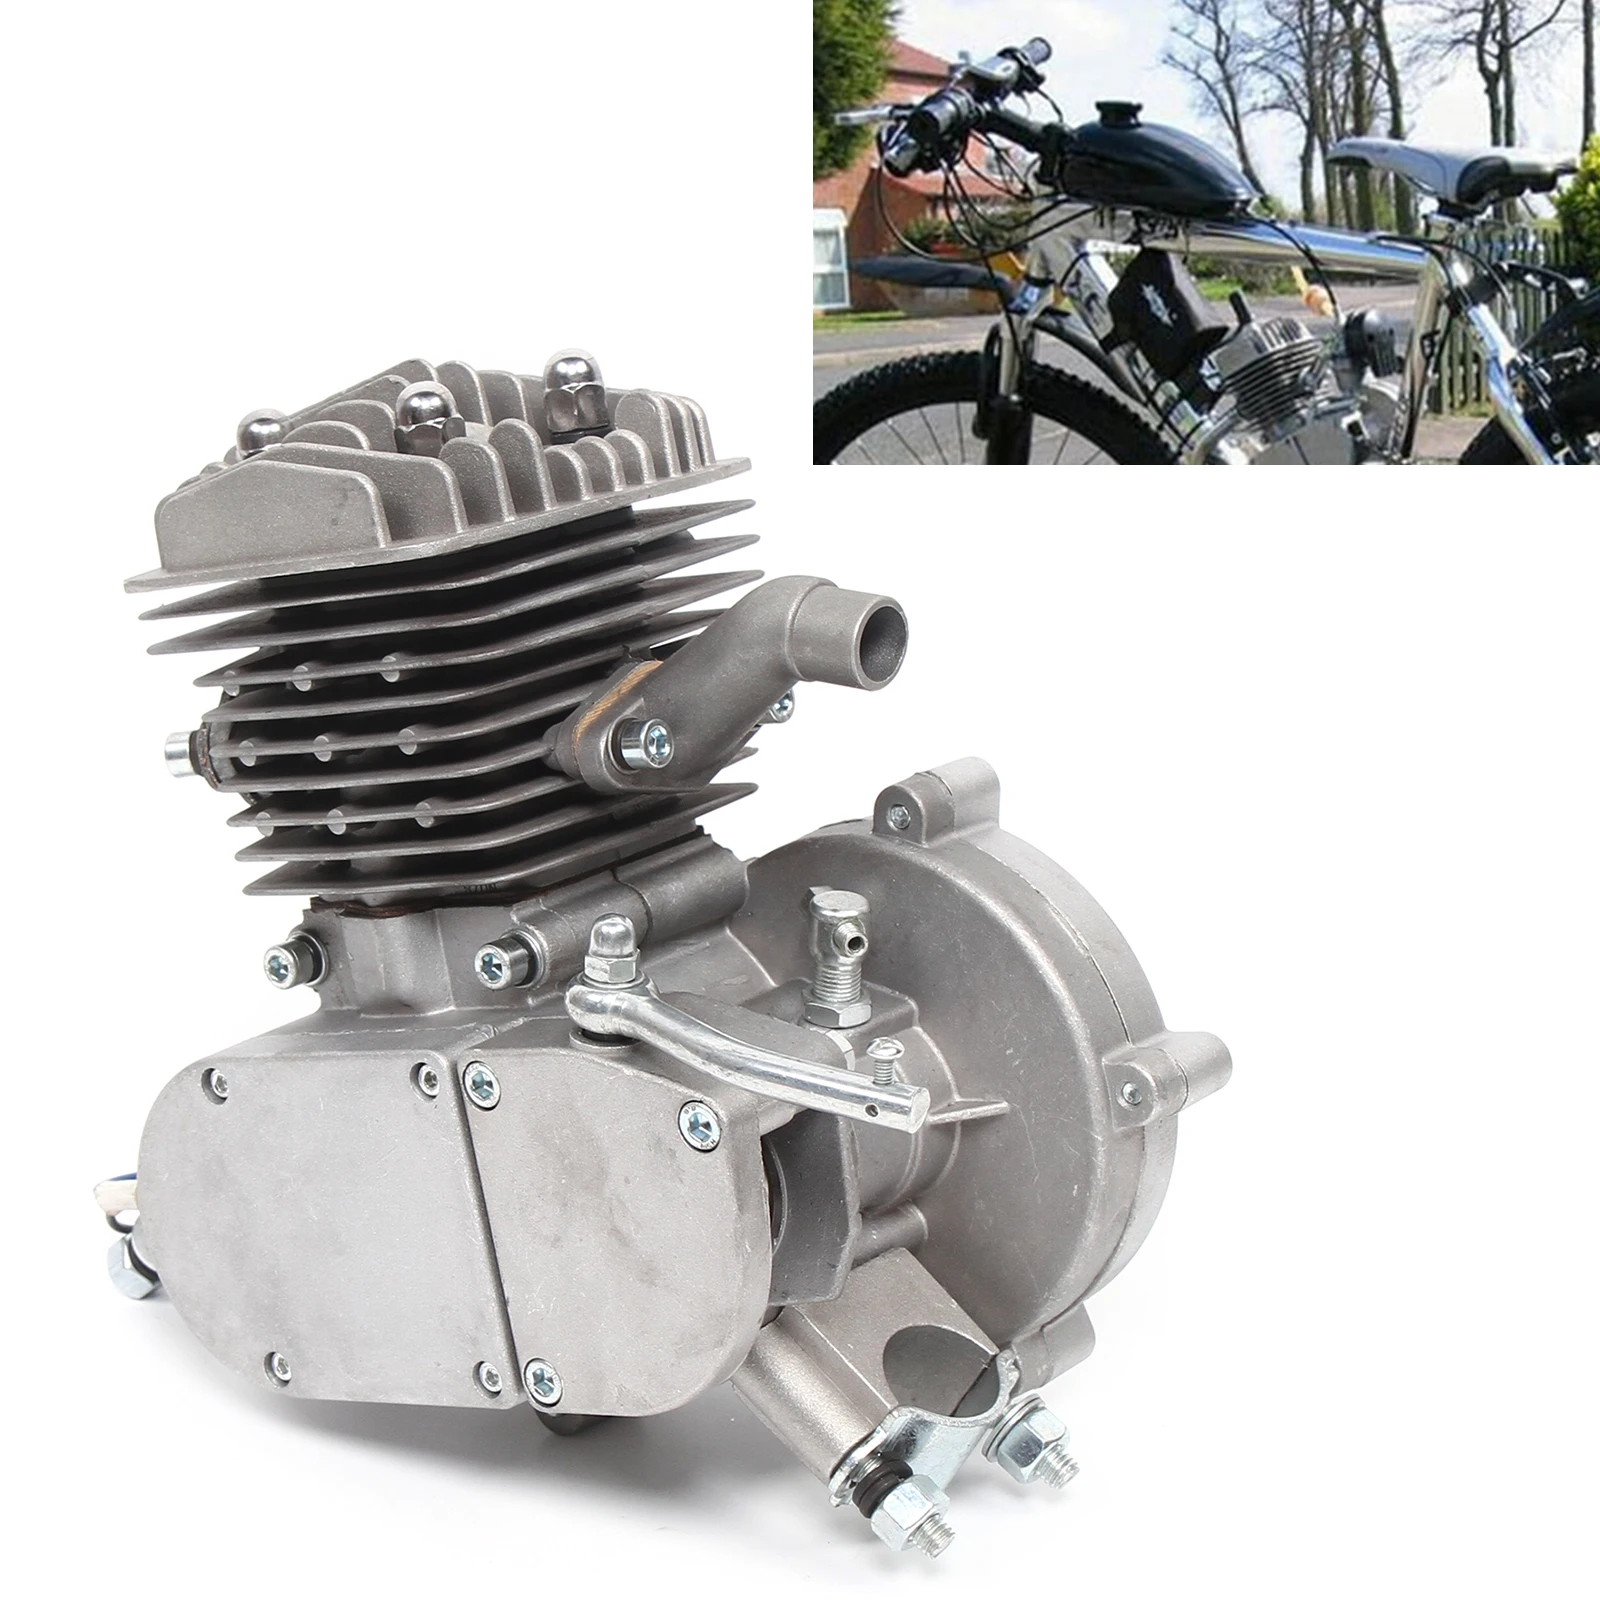 80cc 2-Stroke Motorized Bike Engine Fully Assembled Bicycle Petrol Engine Motor For Motorized Bicycle Cycle Bike Upgraded enlarge